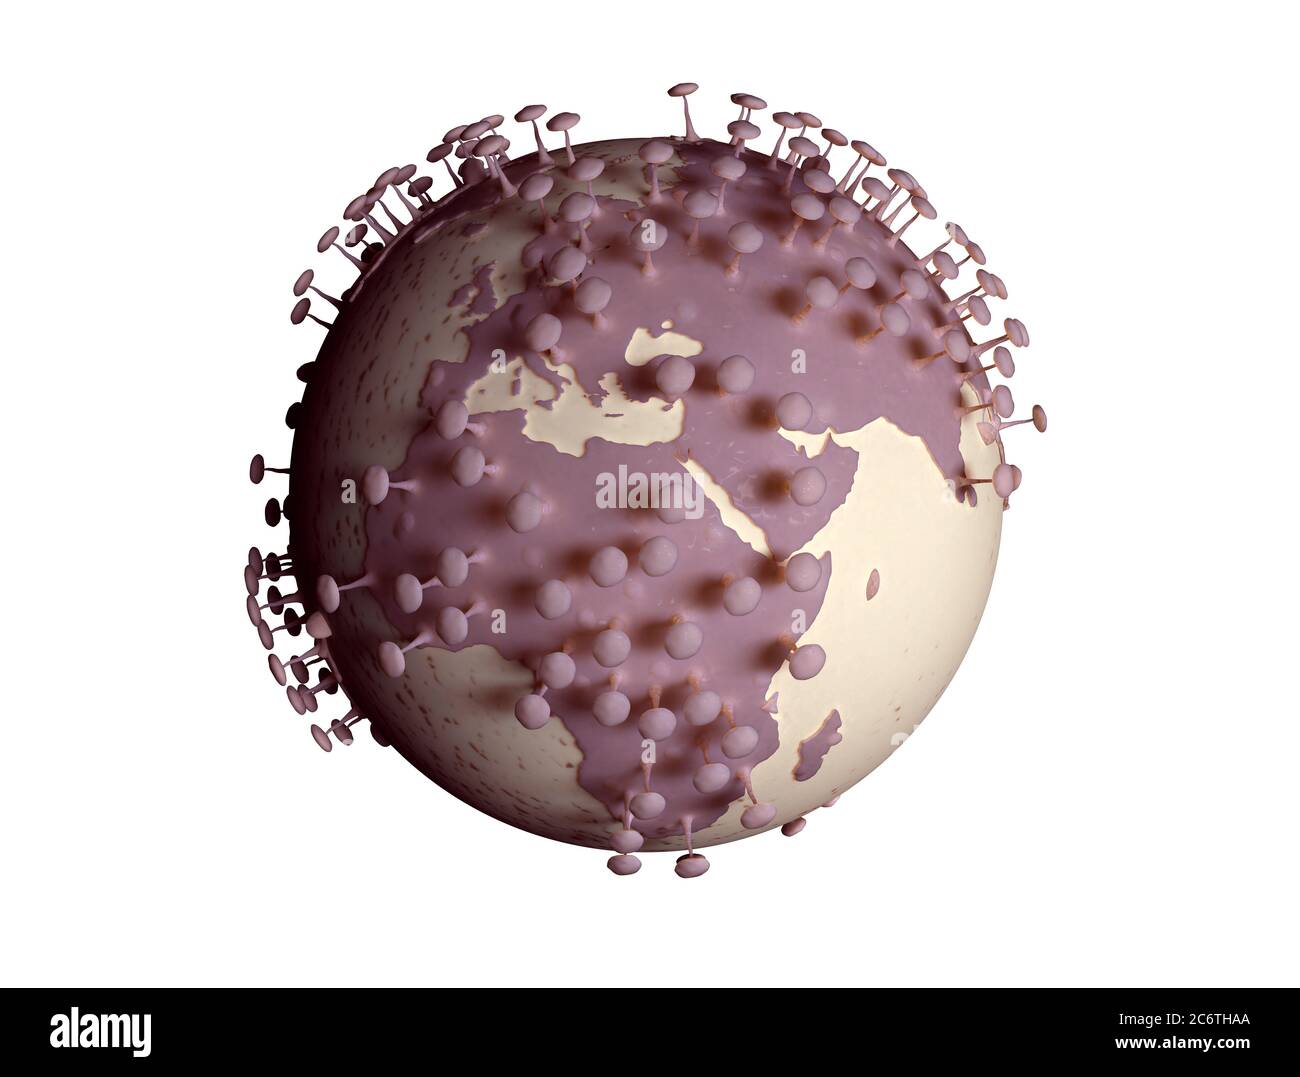 Planet Erde verwandeln sich in Viruszelle isoliert auf weißem Hintergrund. 3d-Illustration für Coronavirus oder COVID-19 Pandemie Stockfoto